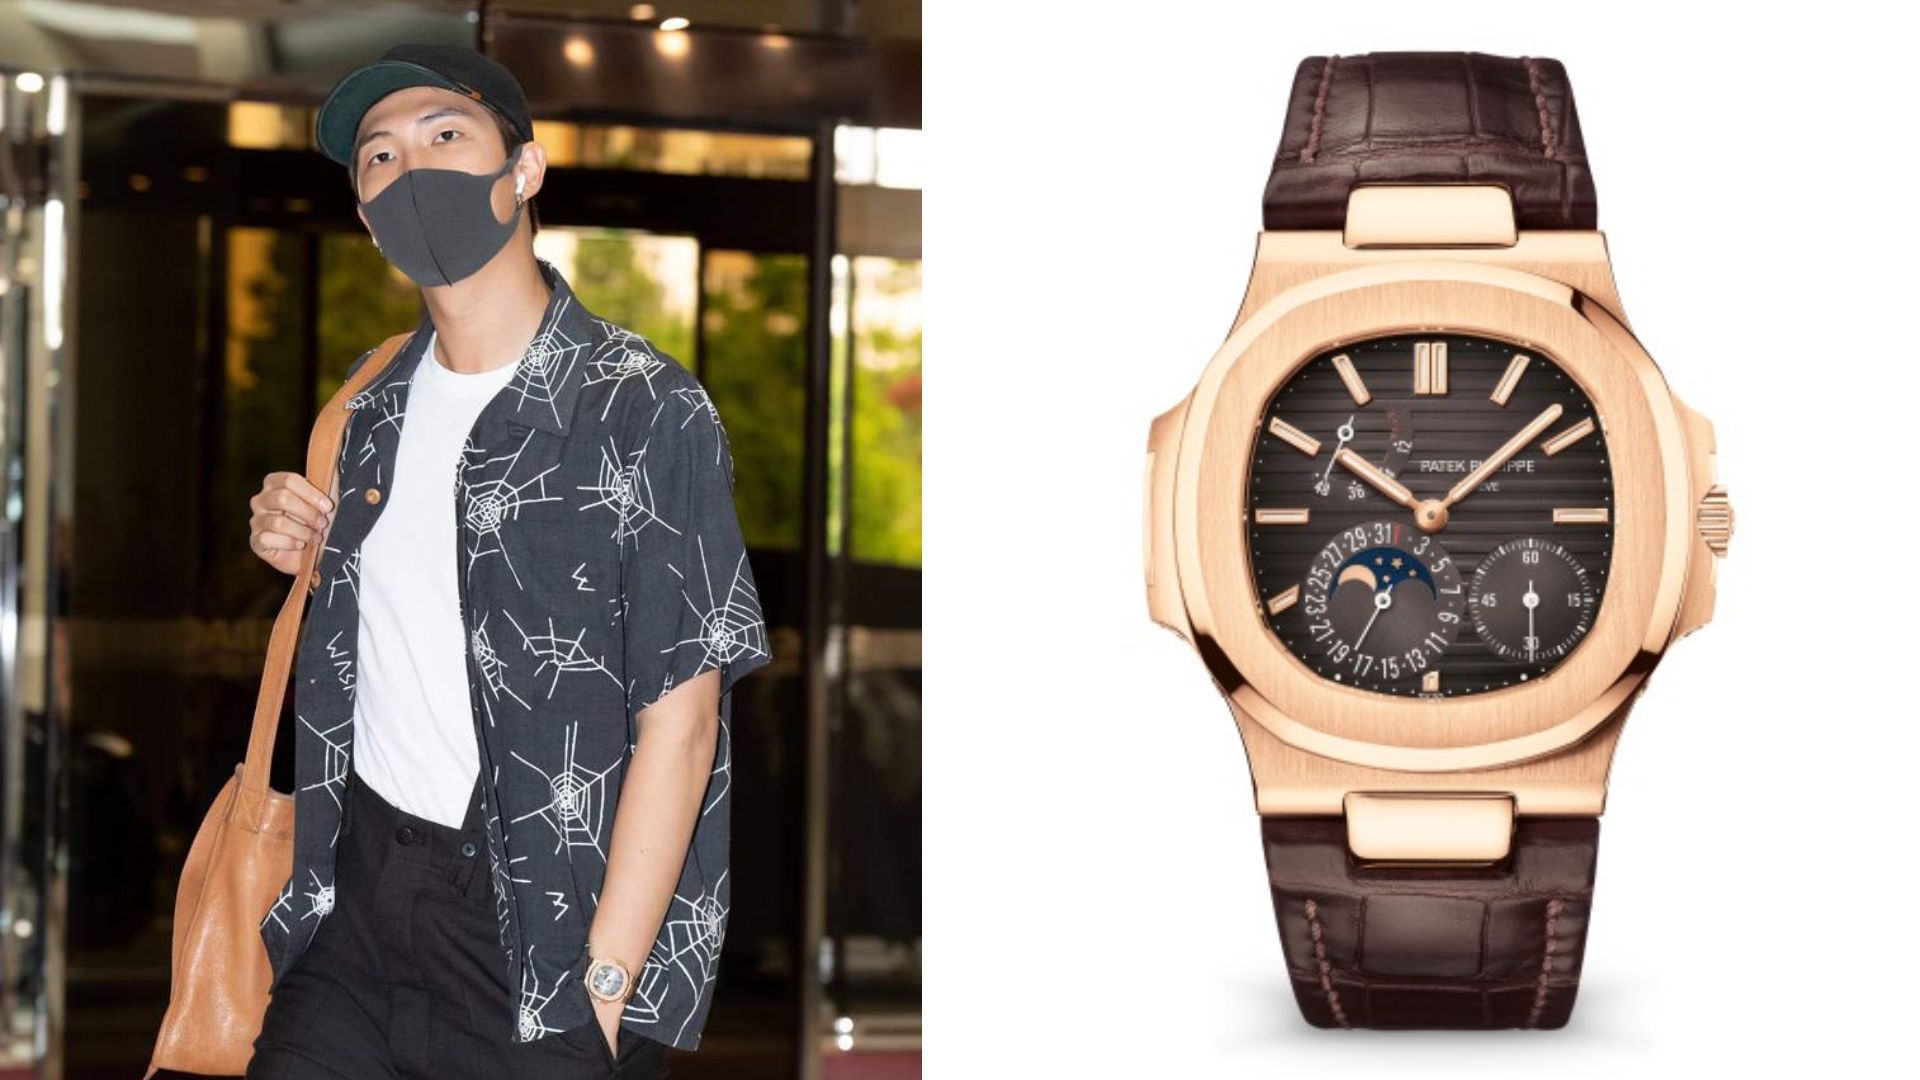 BTS RM luxury watches